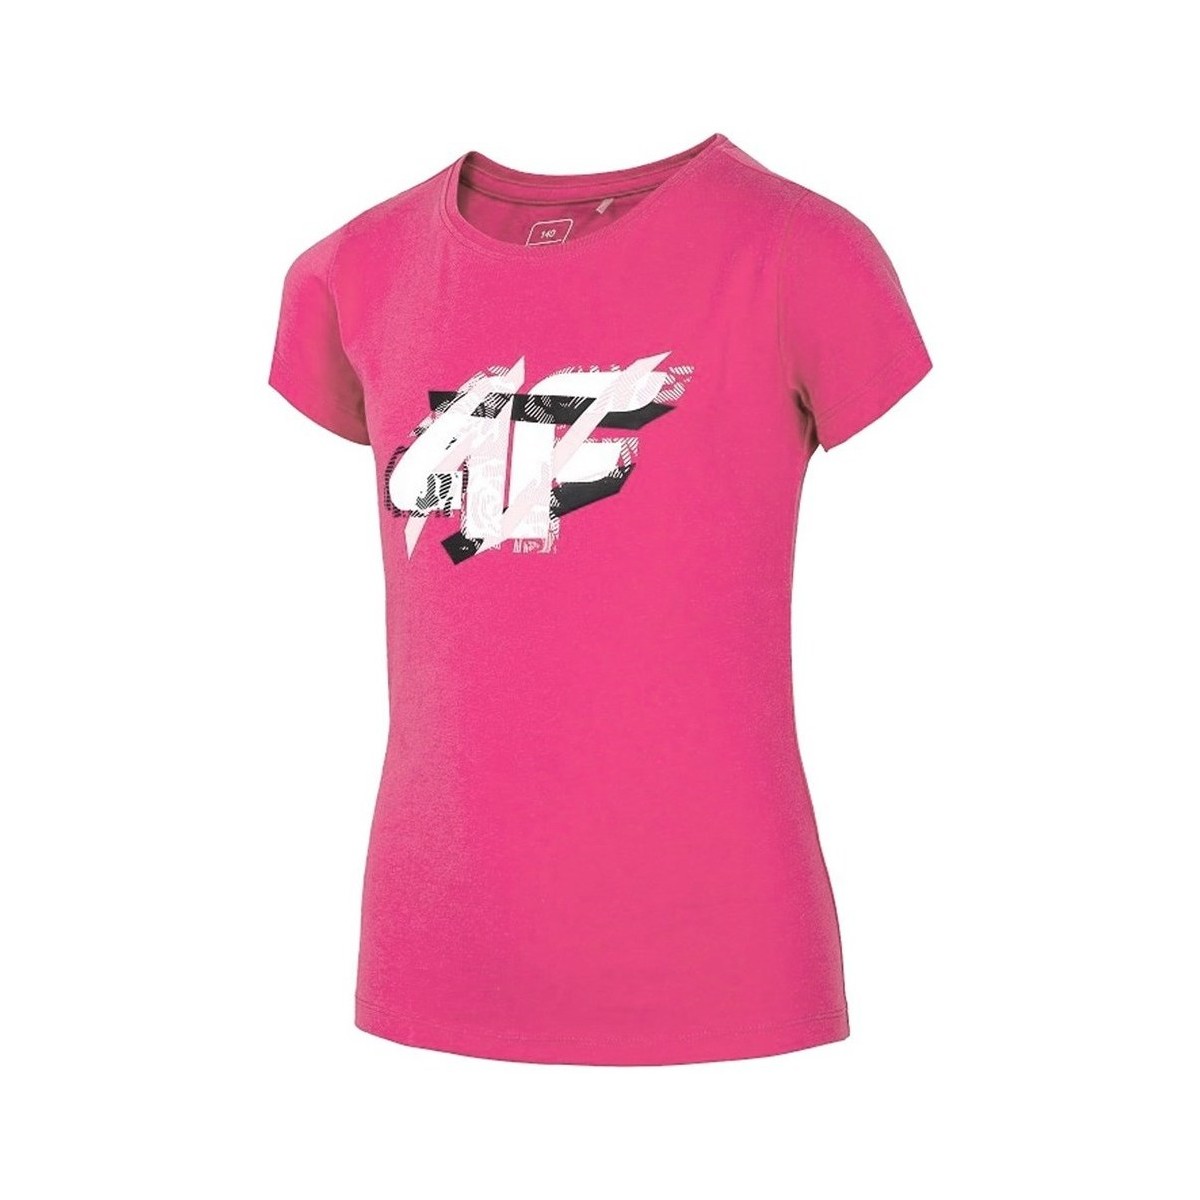 vaatteet Tytöt Lyhythihainen t-paita 4F JTSD002 Vaaleanpunainen